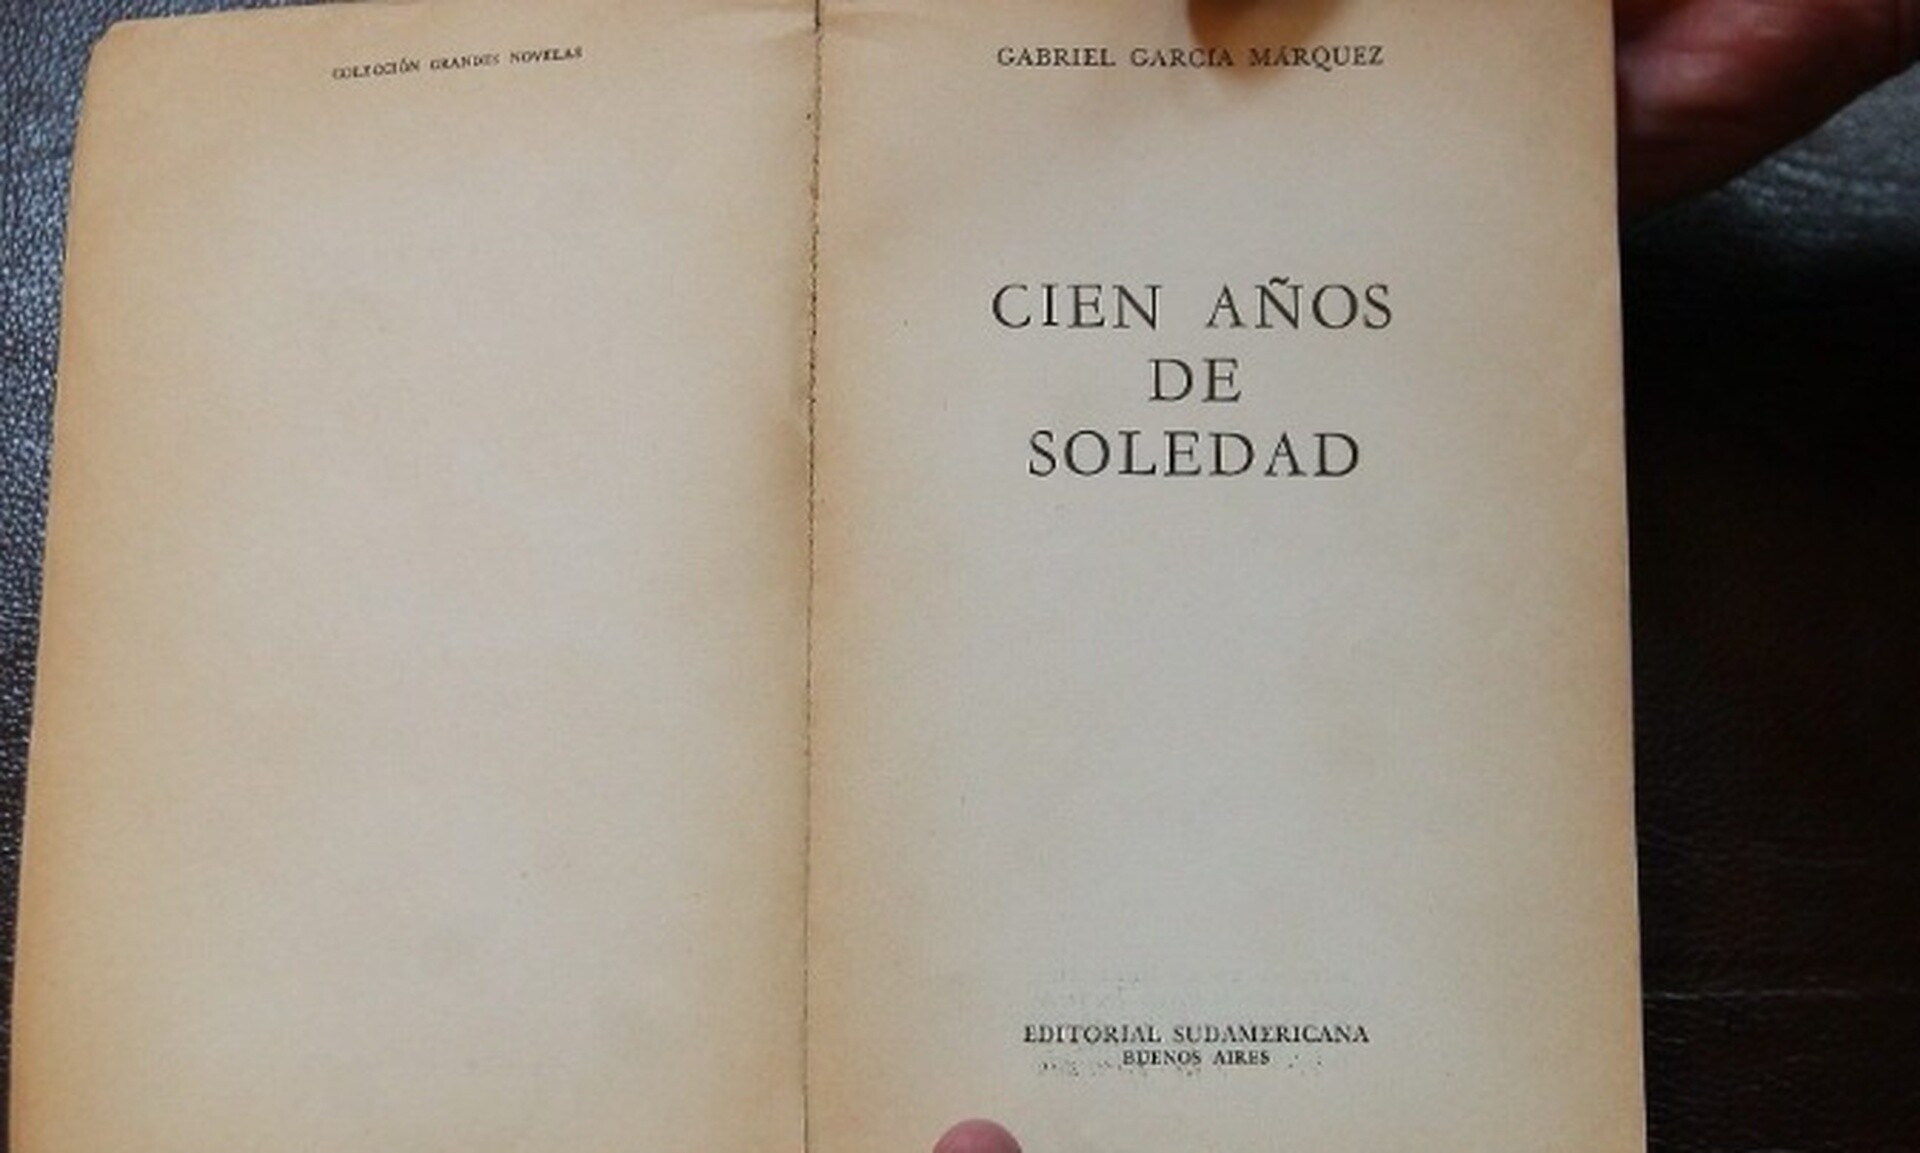 Το αριστούργημα του Γκαμπριέλ Γκαρσία Μάρκες "Εκατό χρόνια μοναξιά" έγινε σειρά